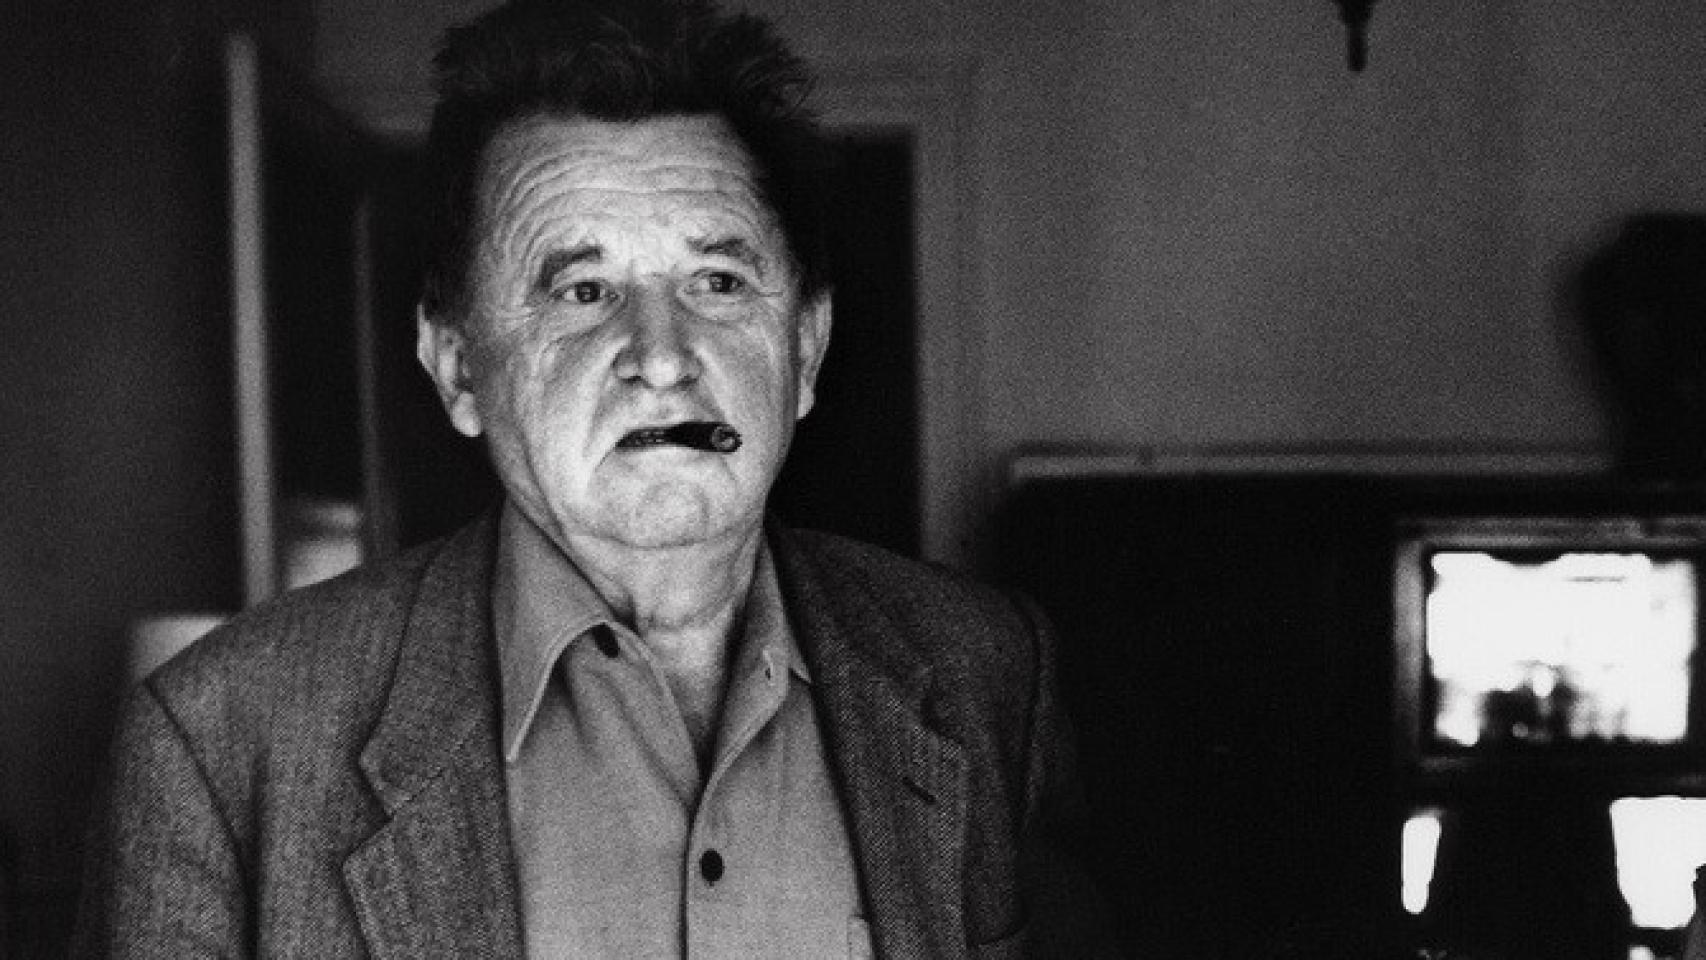 Morre o francês Jean-Marie Straub, mestre do cinema experimental